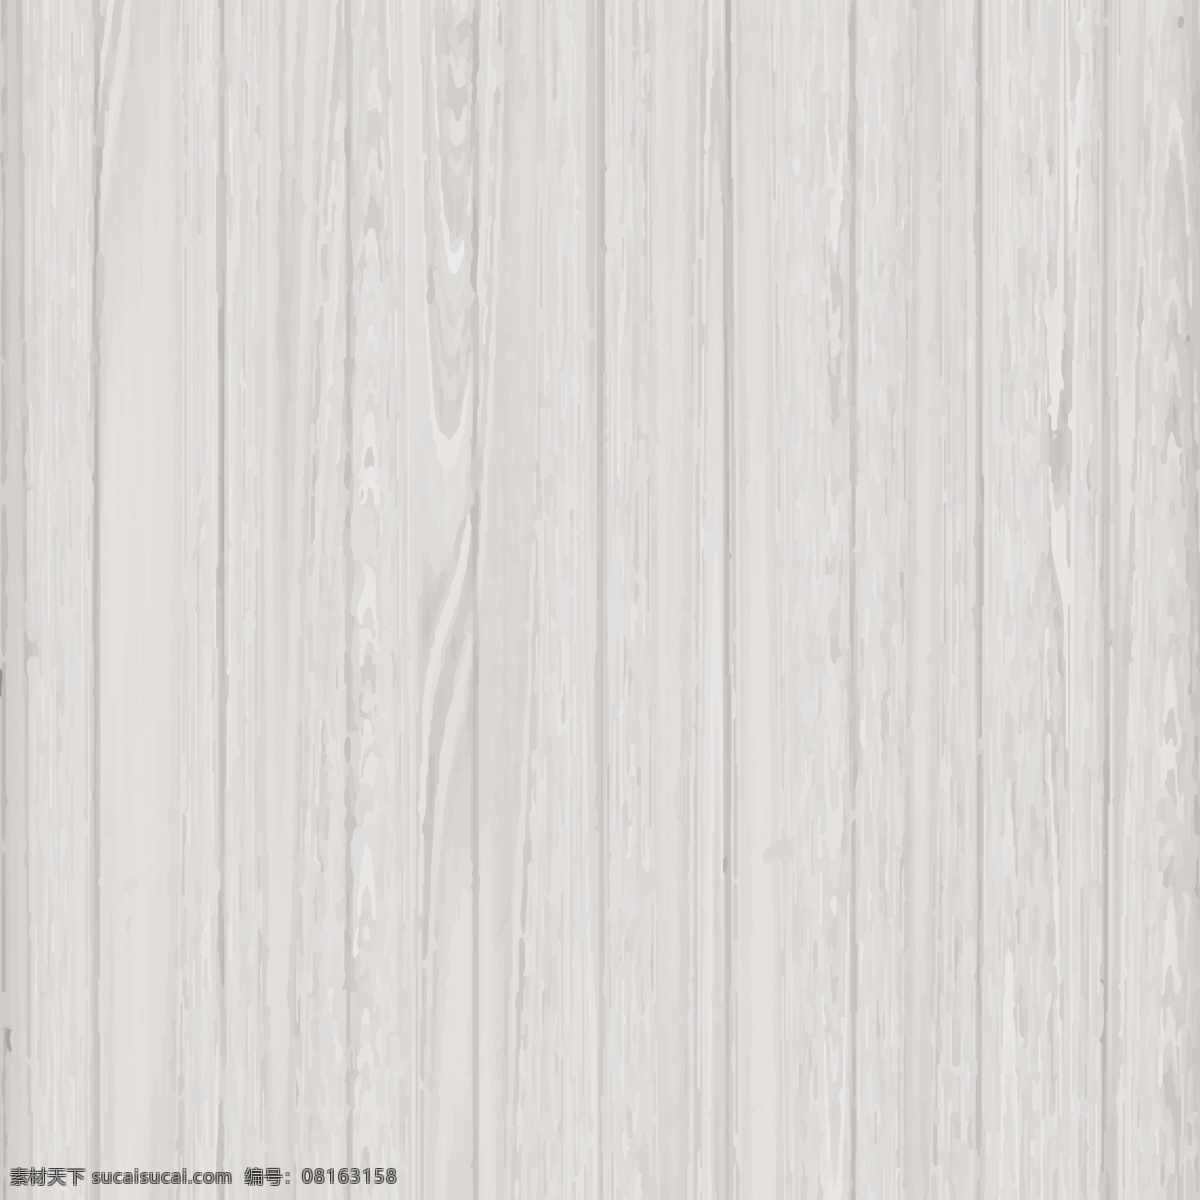 木质 纹理 灰色 背景 抽象背景 抽象 自然 木板 建筑 装饰 松木 木制 树枝 材料 抽象形状 橡木 树干 软木 拼花地板